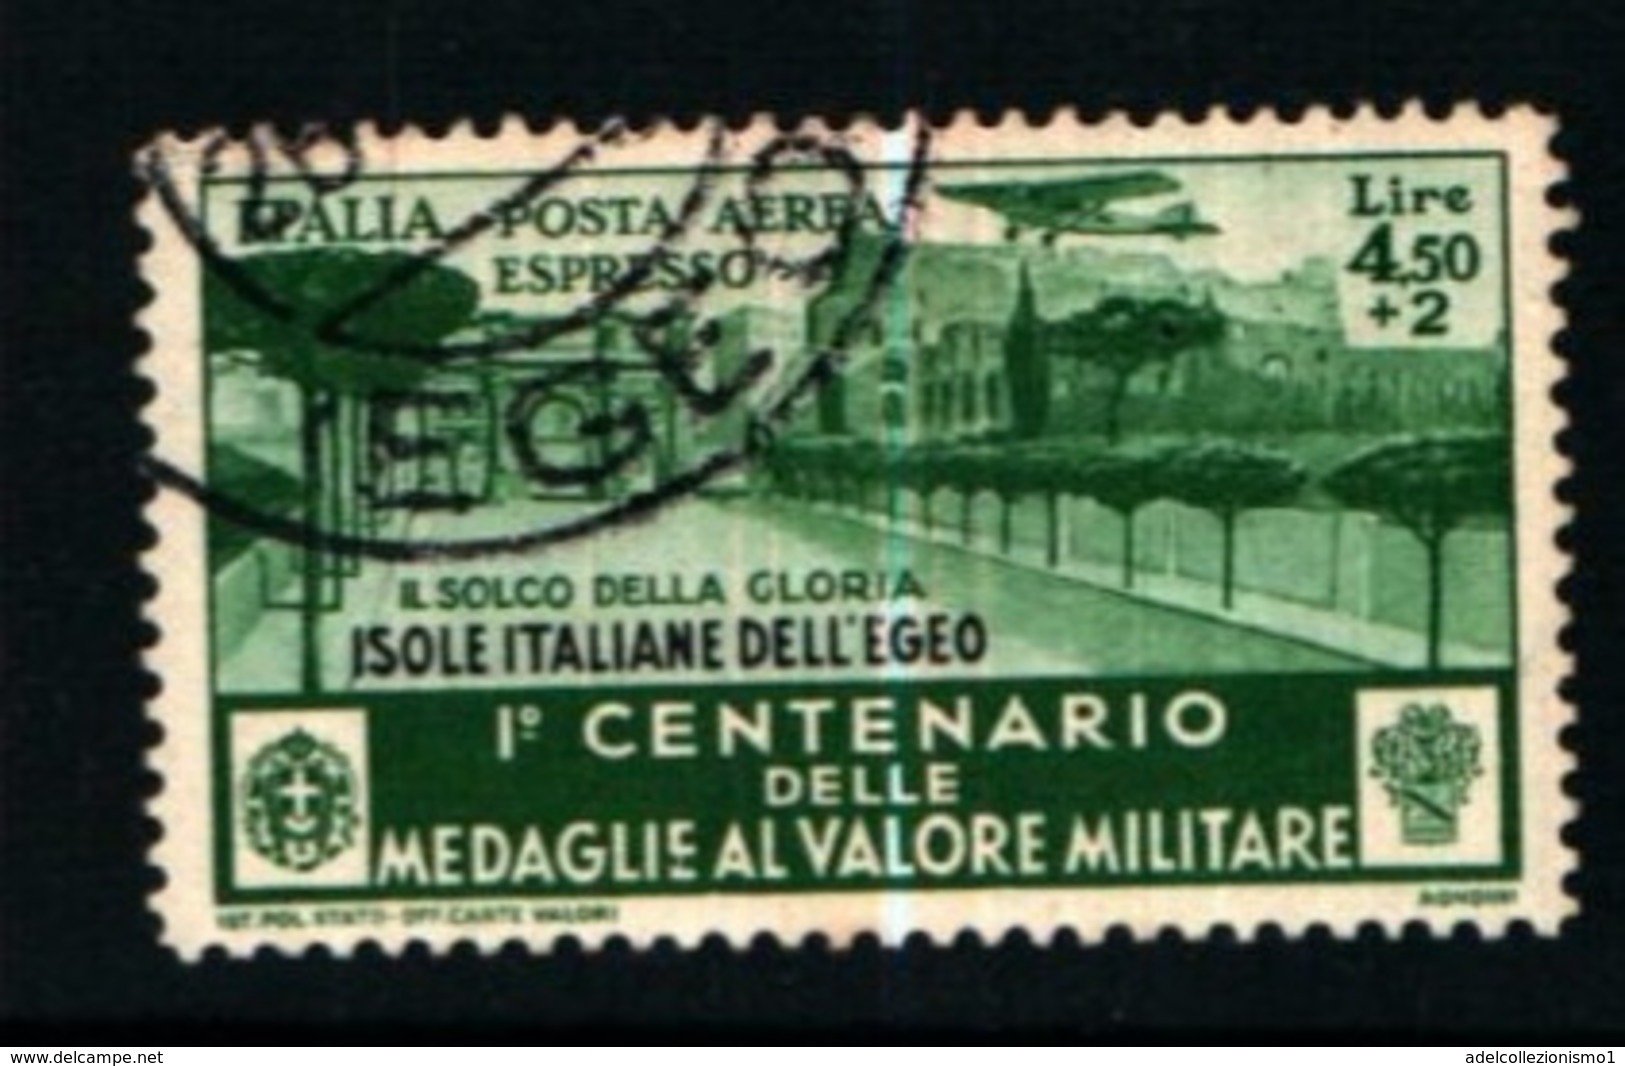 19414B) ITALIA-EGEO-Centenario Dell'istituzione Delle Medaglie Al Valor Militare - POSTA AEREA - Dicemb- 1 VALORE USATO - Aegean (Lipso)